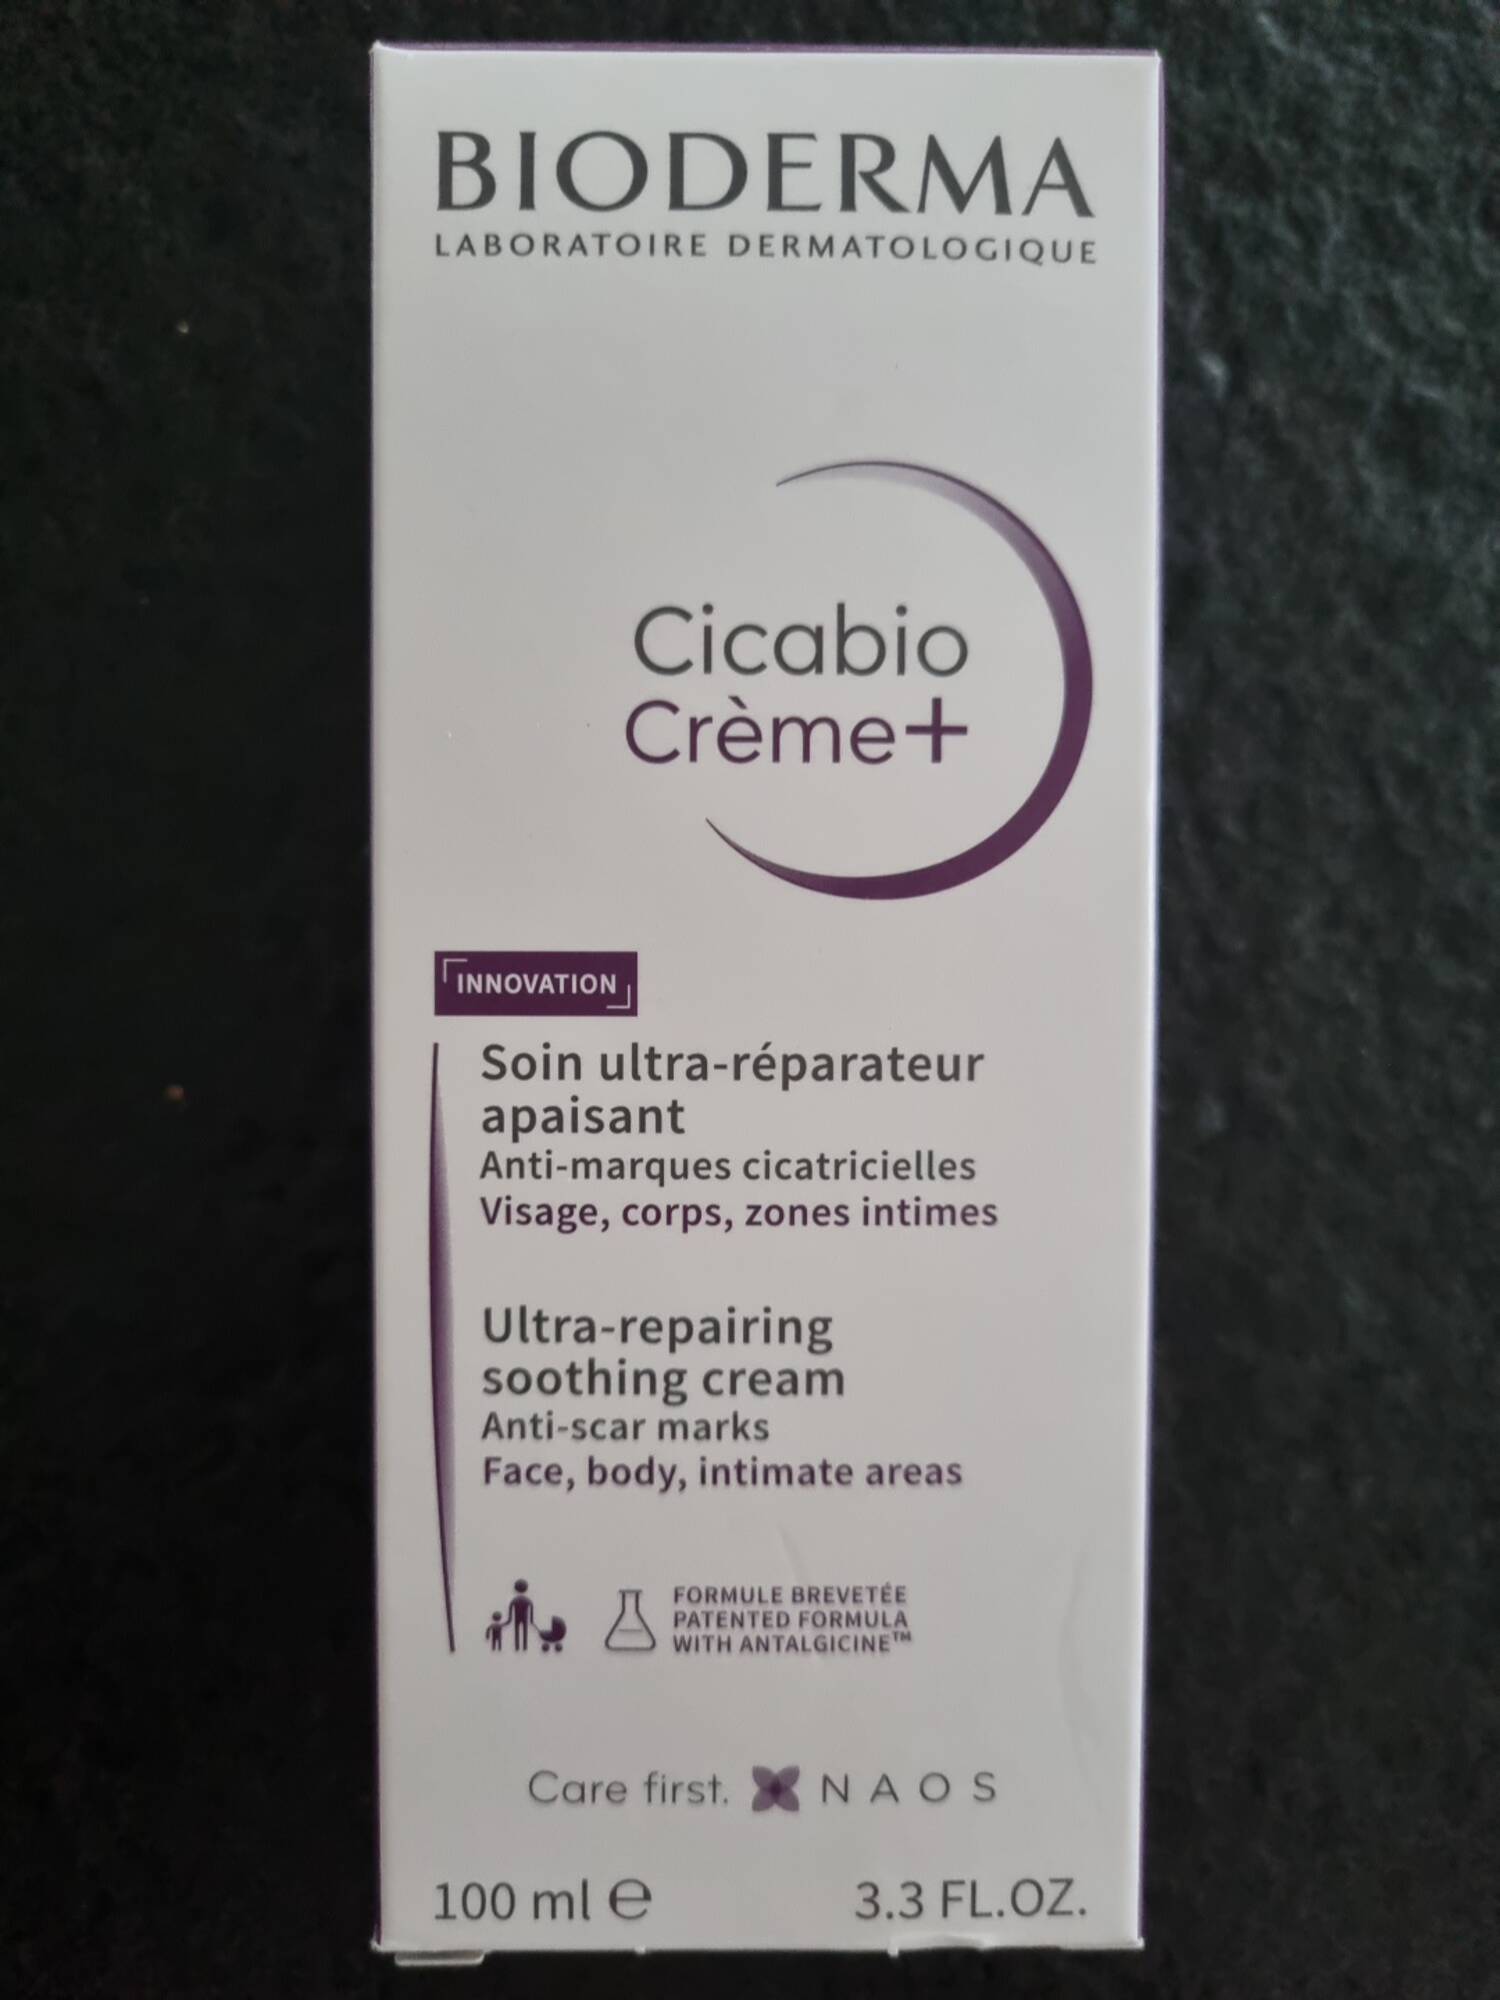 BIODERMA - Cicabio Crème+ - Soin ultra-réparateur apaisant